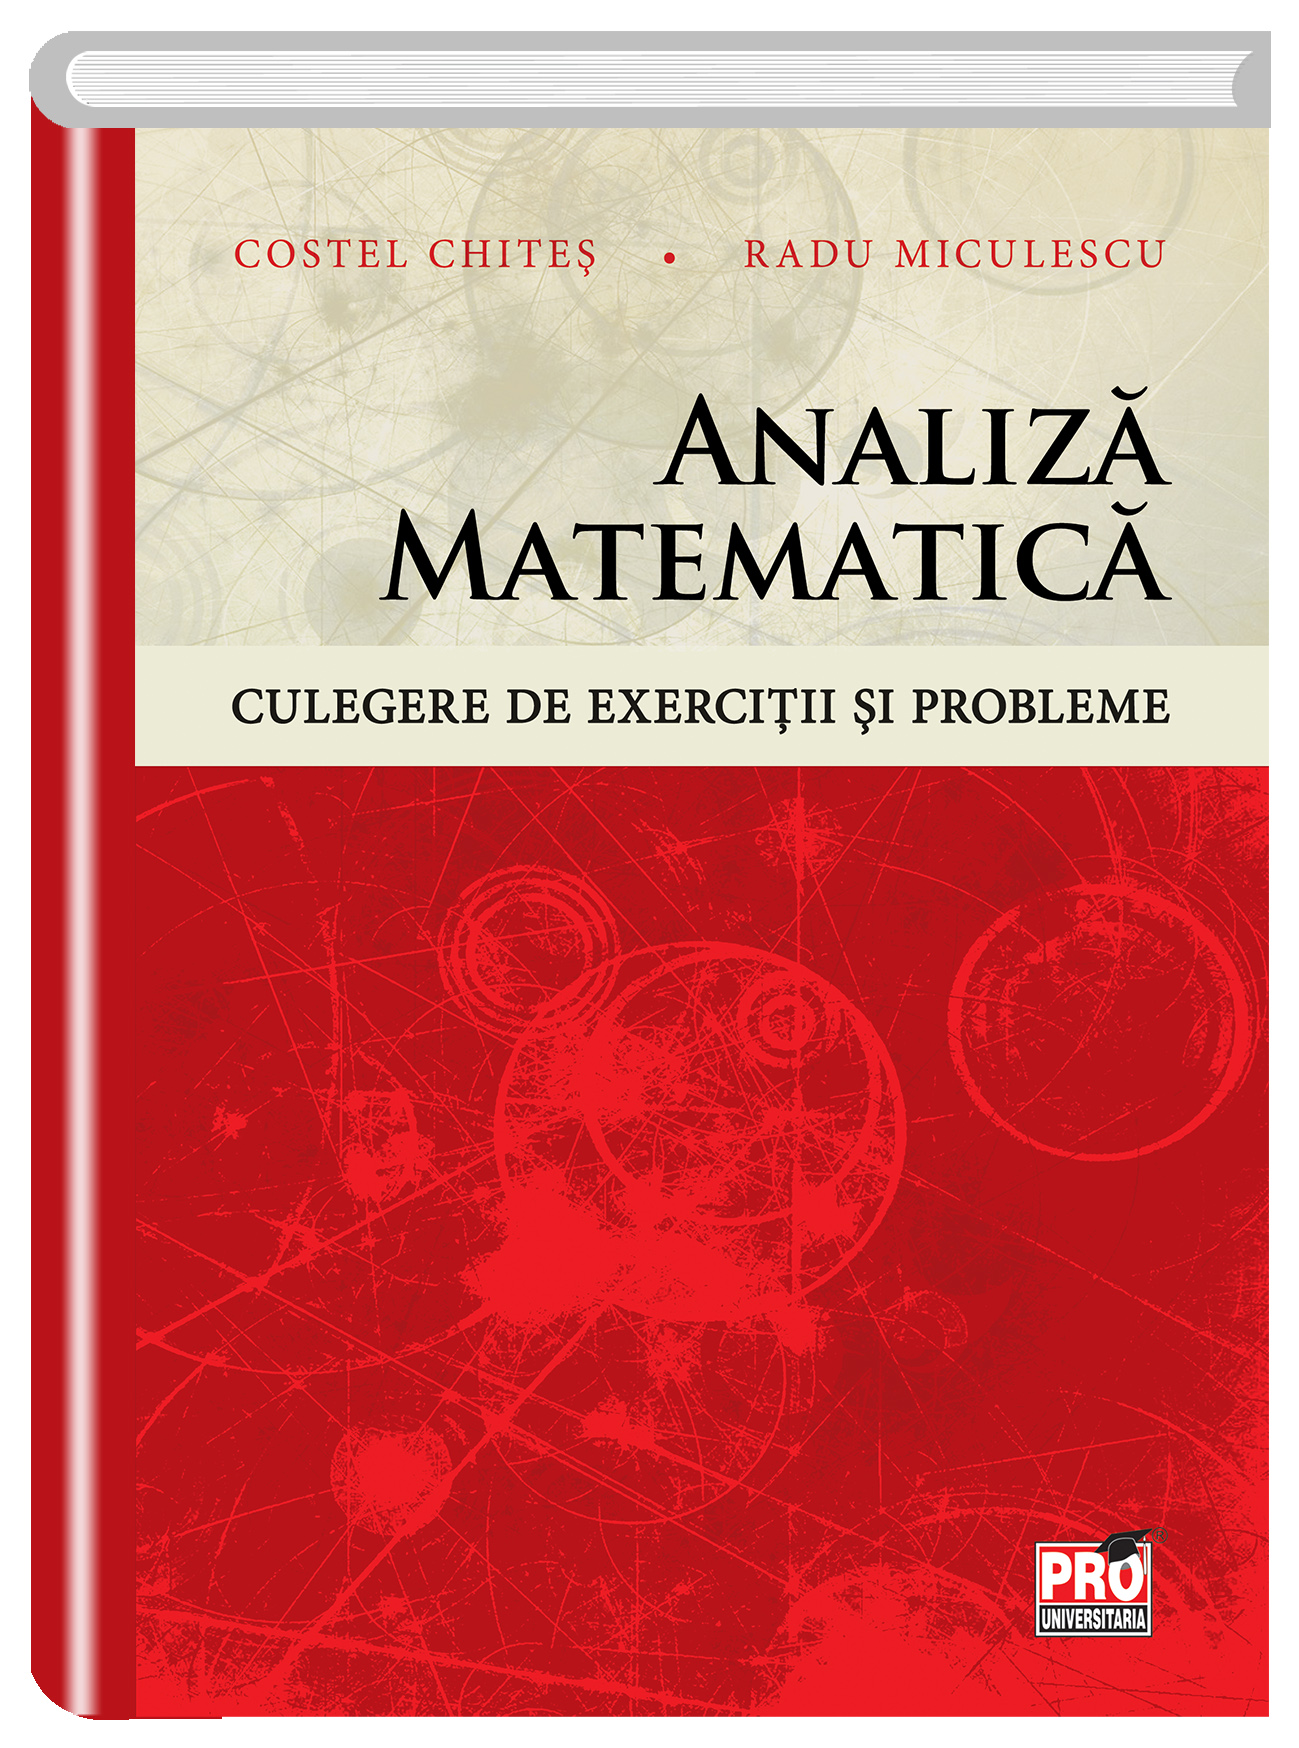 Analiza matematica. Culegere de exercitii si probleme | Costel-Dobre Chites, Radu Miculescu carturesti.ro Clasa a XI-a